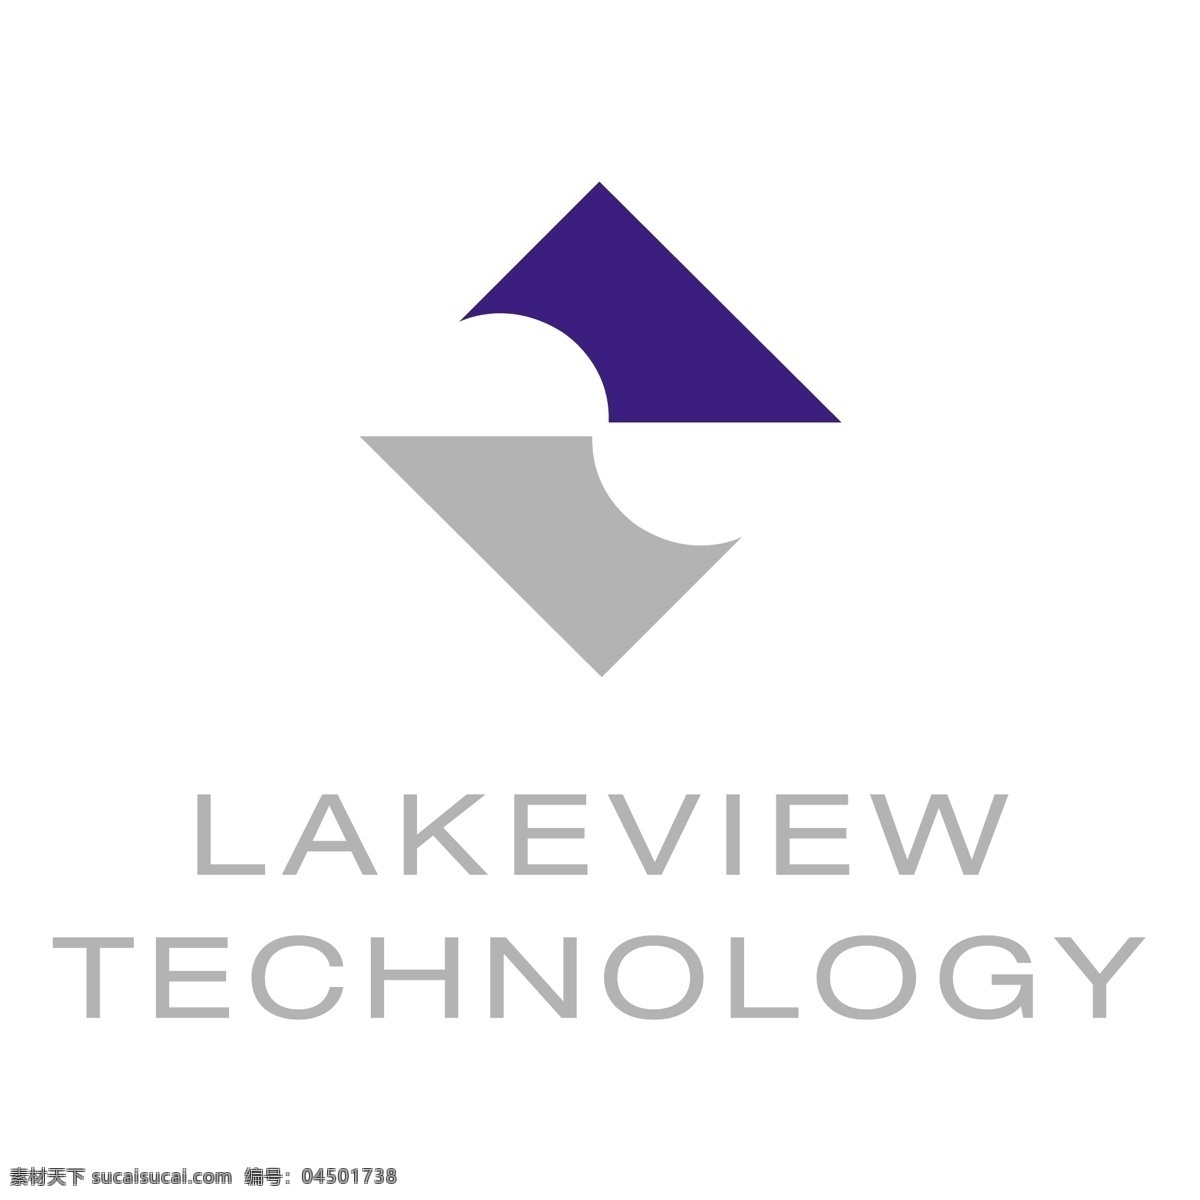 湖 景 技术 标识 公司 免费 品牌 品牌标识 商标 矢量标志下载 免费矢量标识 矢量 psd源文件 logo设计